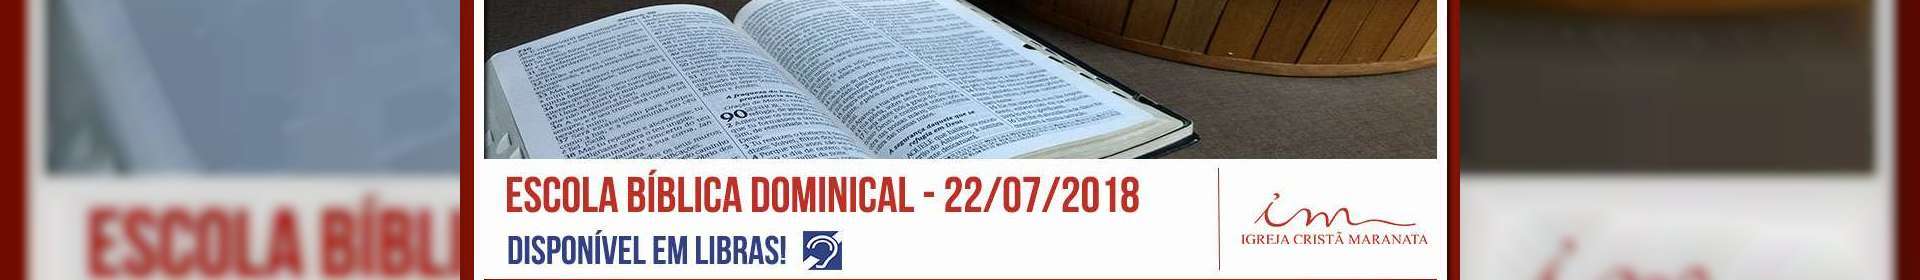 Escola Bíblica Dominical - 22/07/2018